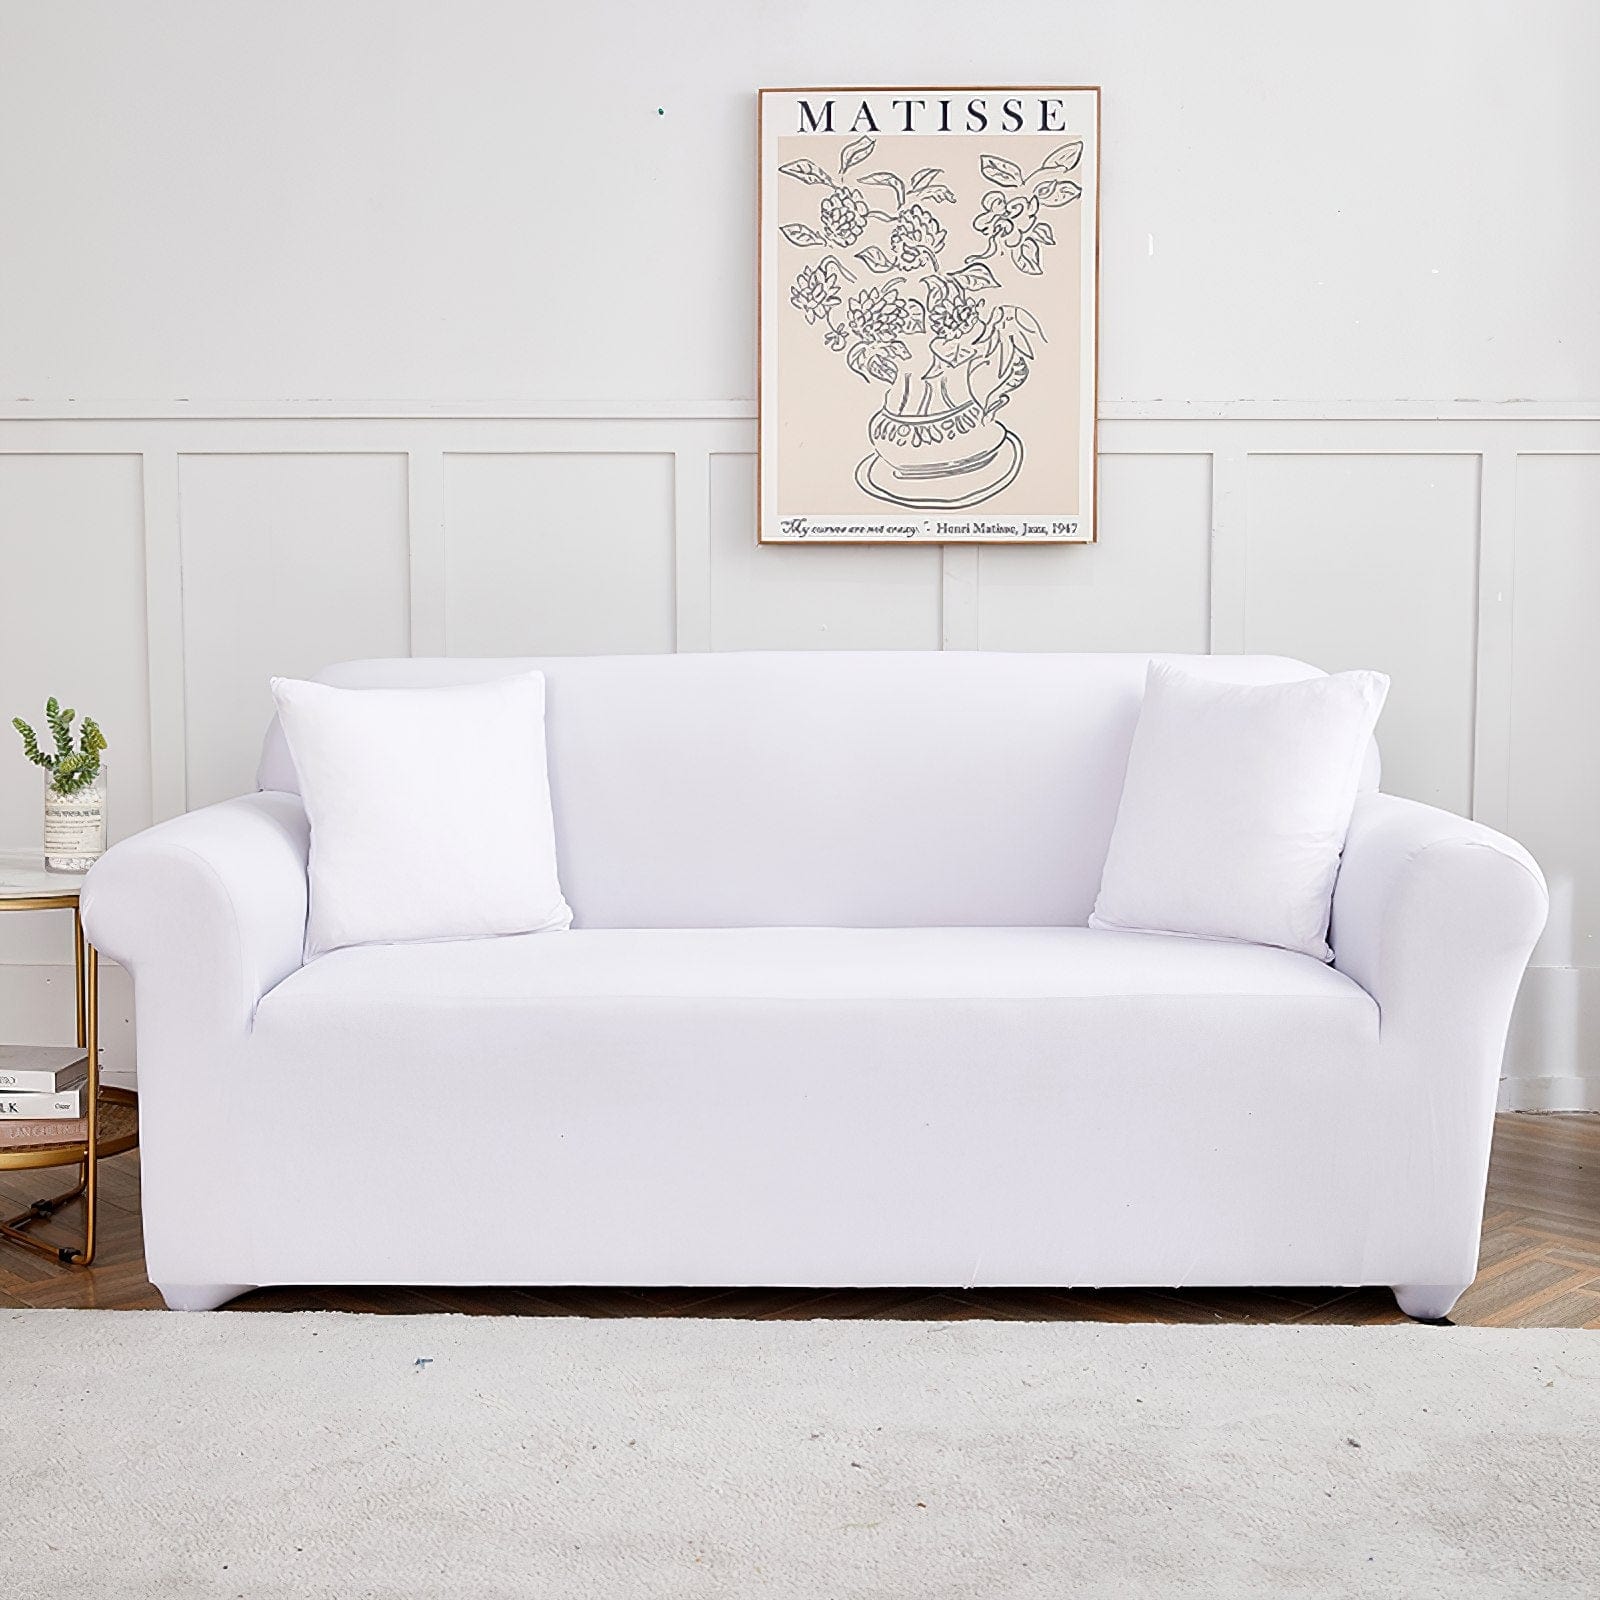 Blanco - Fundas para sofás y sofás de esquina - La Casa de las Fundas